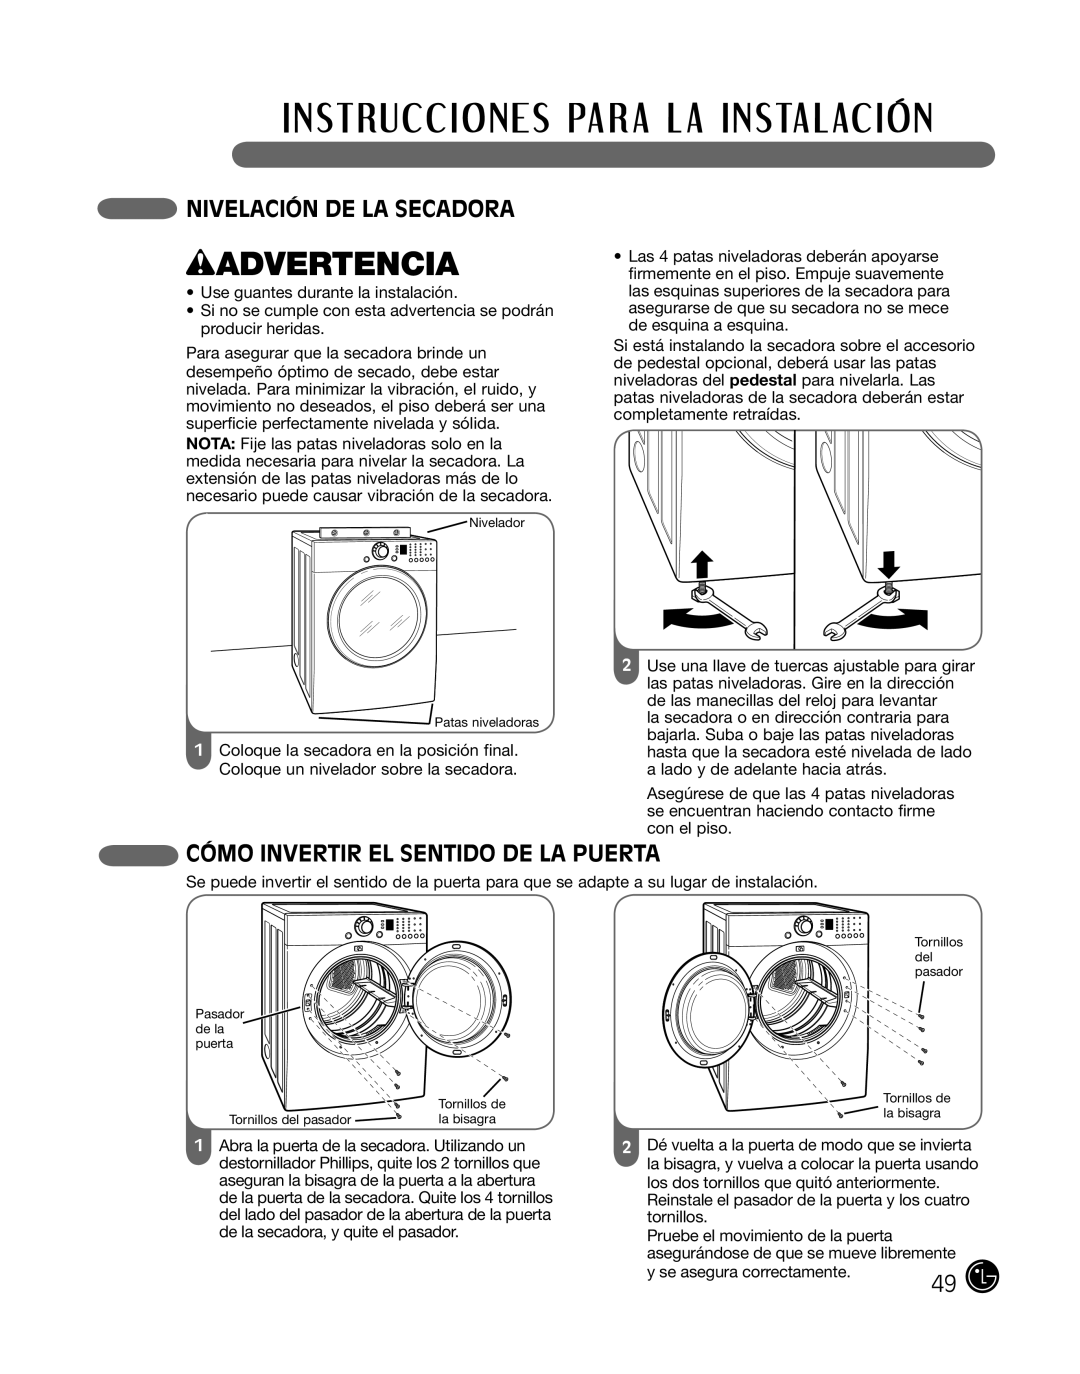 LG Electronics DLE2101W, D2102R, D2102W manual wADVERTENCIA, Nivelación De La Secadora, Cómo Invertir El Sentido De La Puerta 